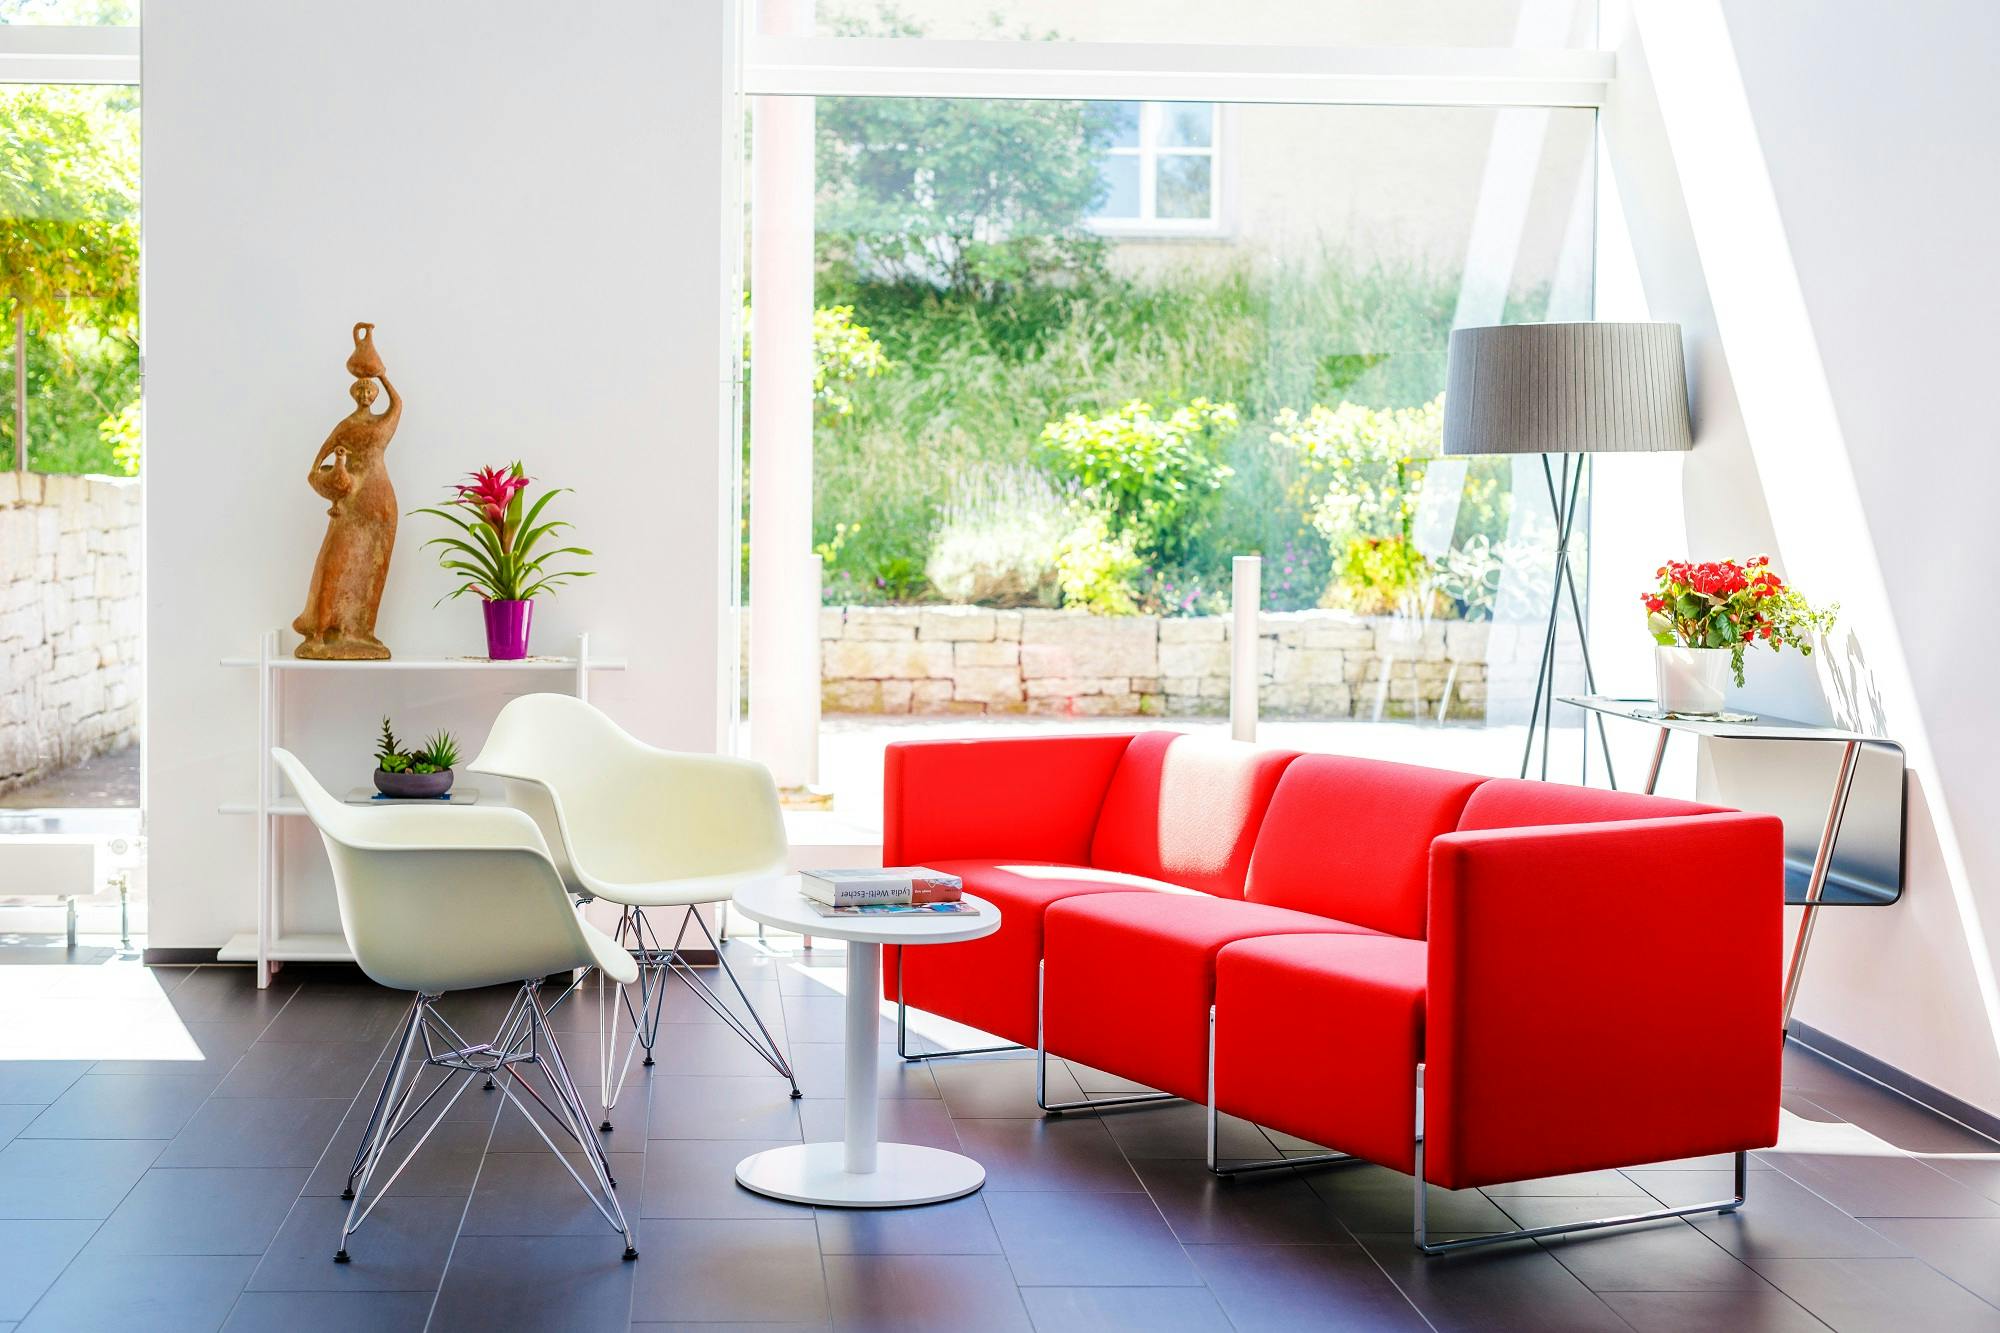 Helles Wohnzimmer mit rotem Sofa, weißem Stuhl und moderner Einrichtung.